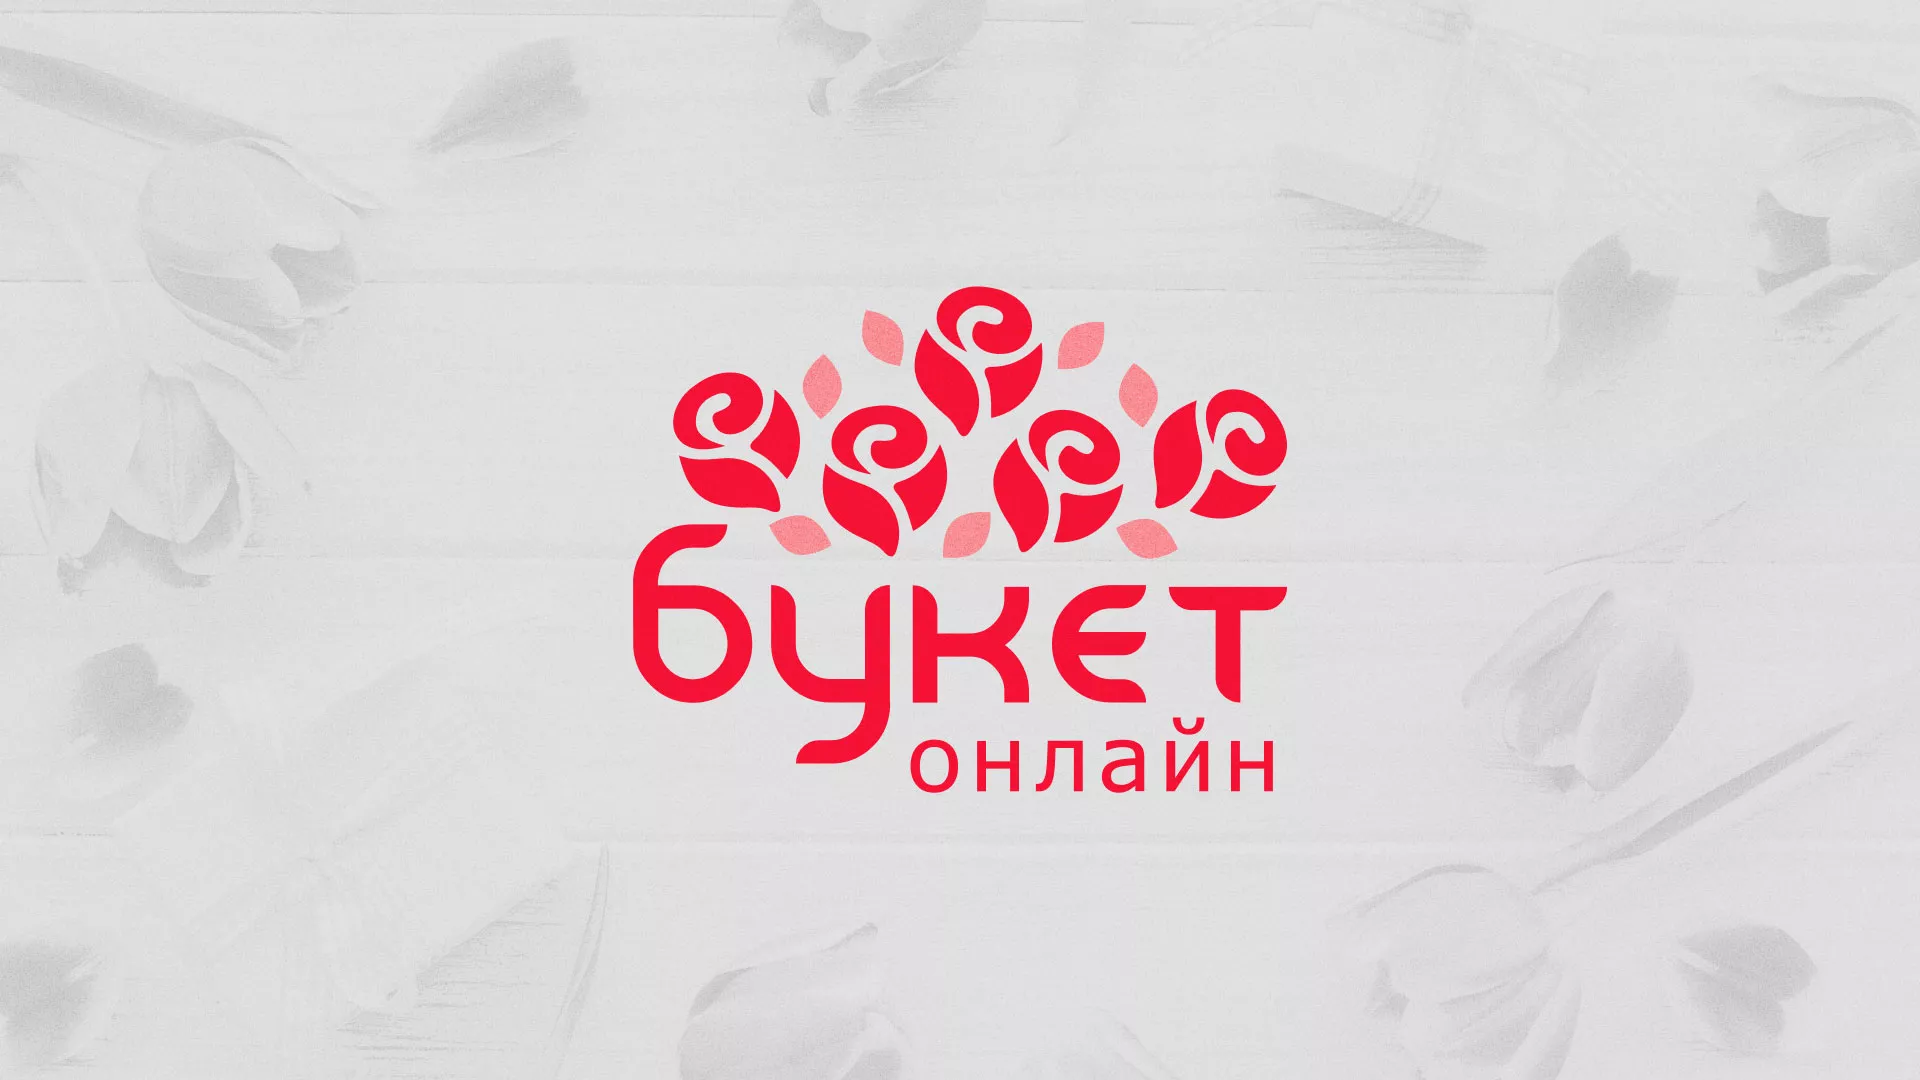 Создание интернет-магазина «Букет-онлайн» по цветам в Советске